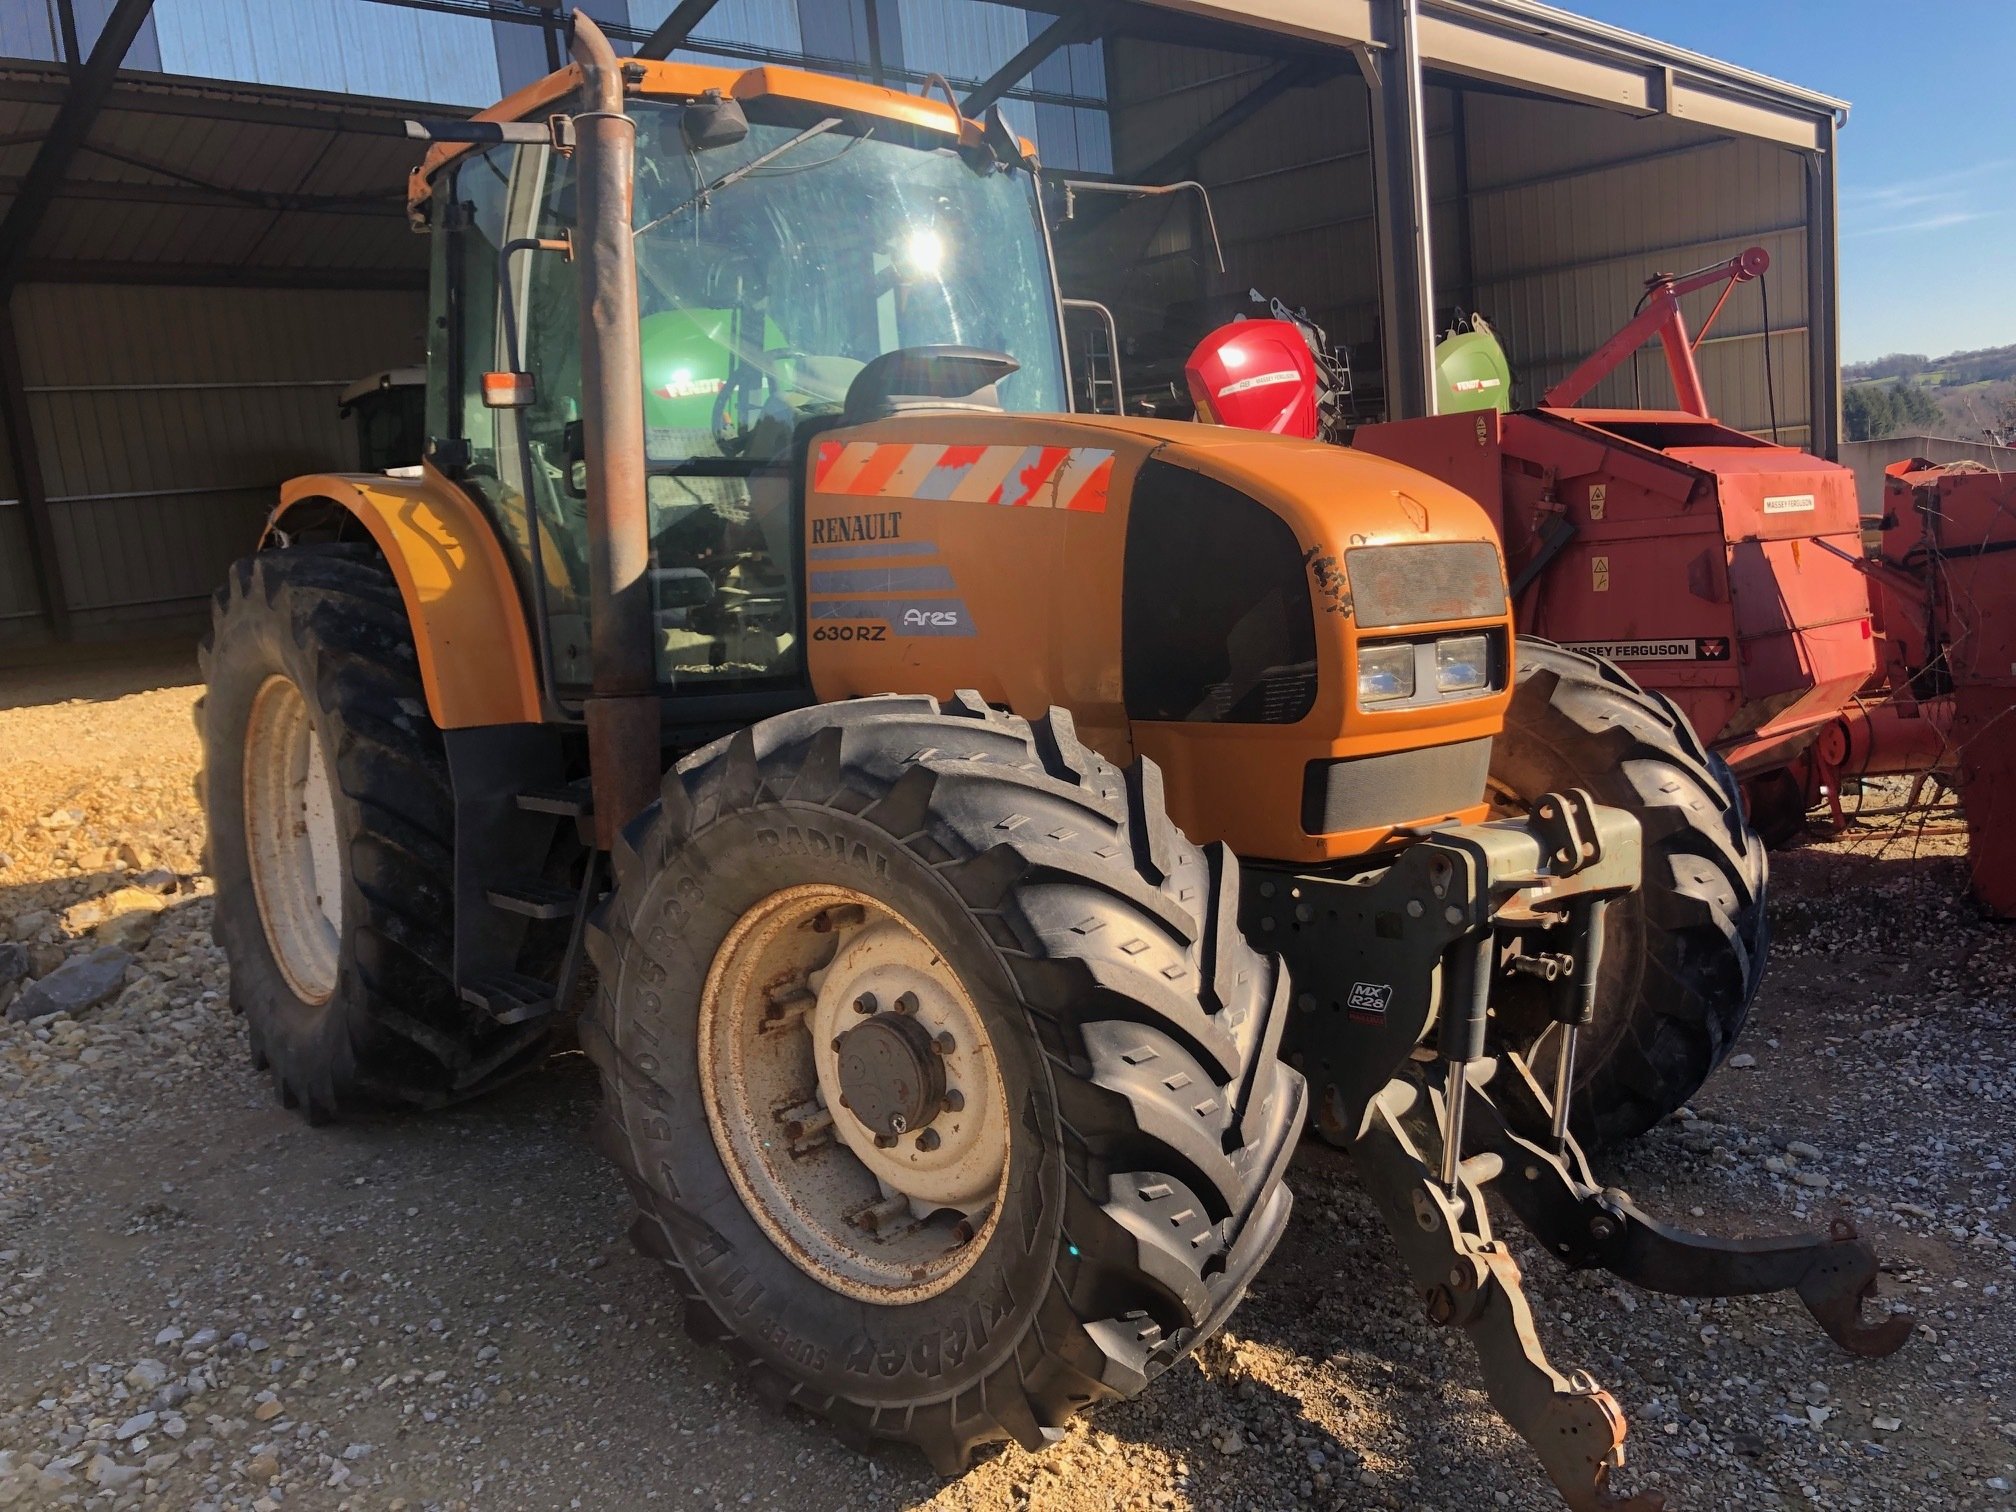 Tracteur agricole Renault Ares 630 RZ à vendre sur Marsaleix